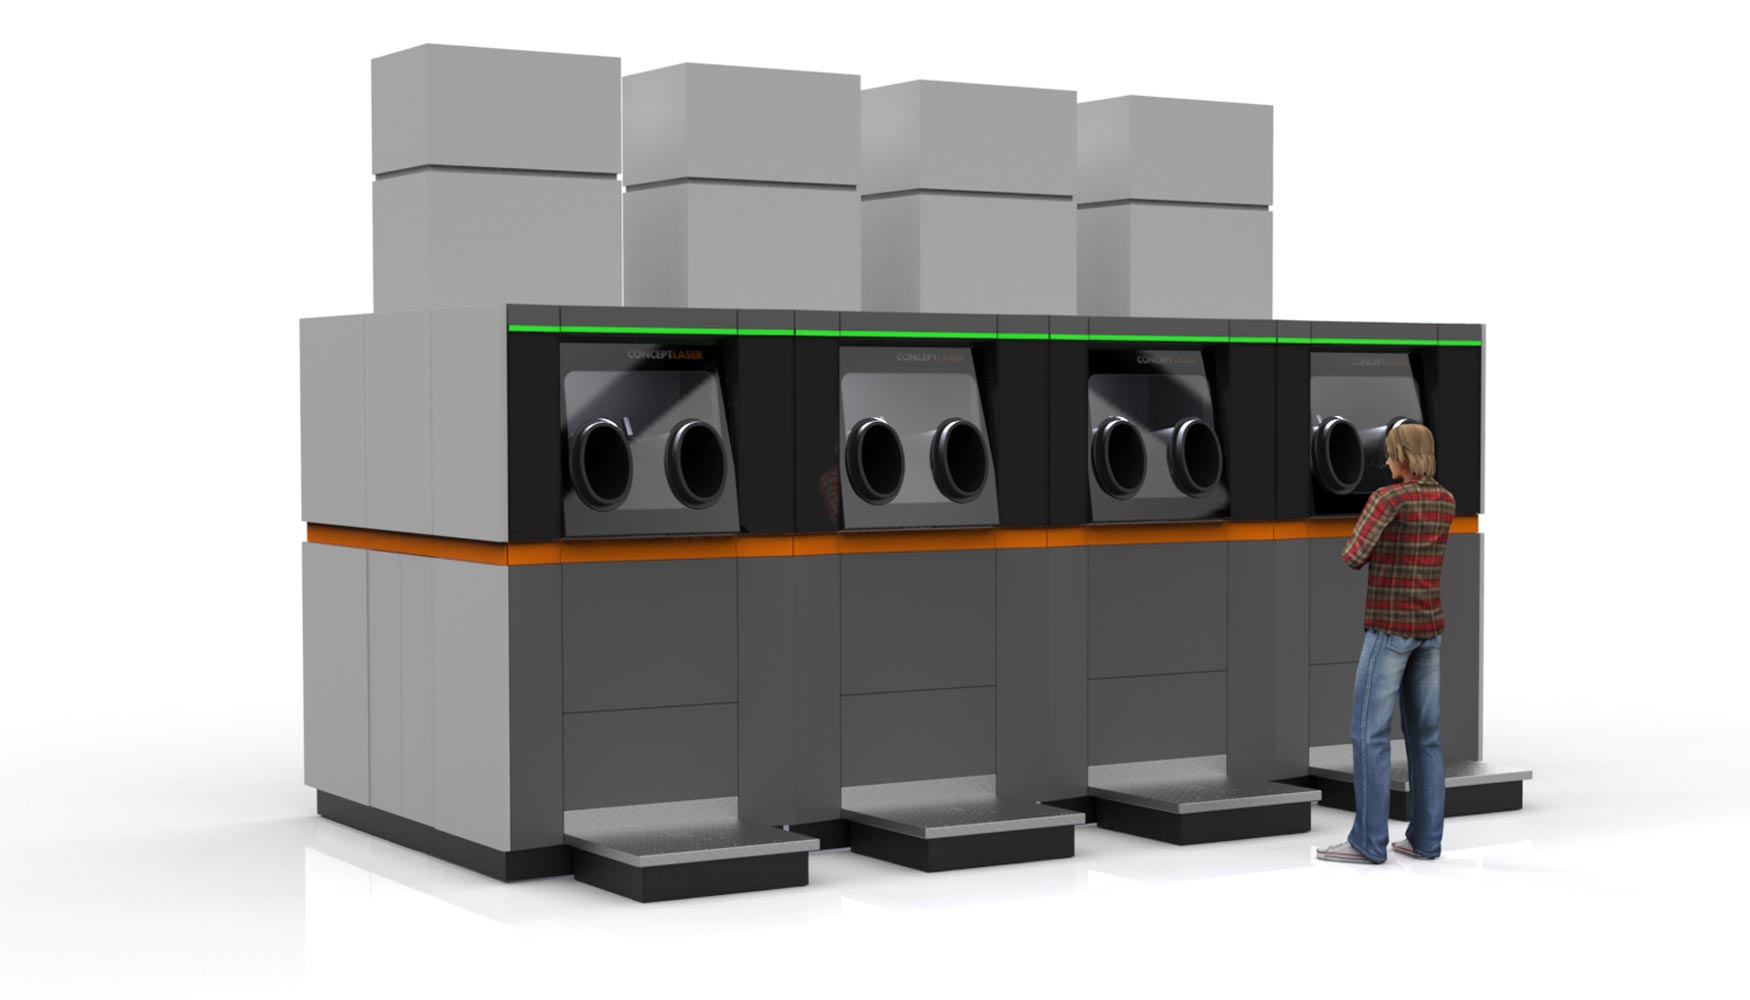 Varias estaciones de manipulacin pueden formar una unidad central de preparacin del polvo metlico. Foto: Concept Laser...